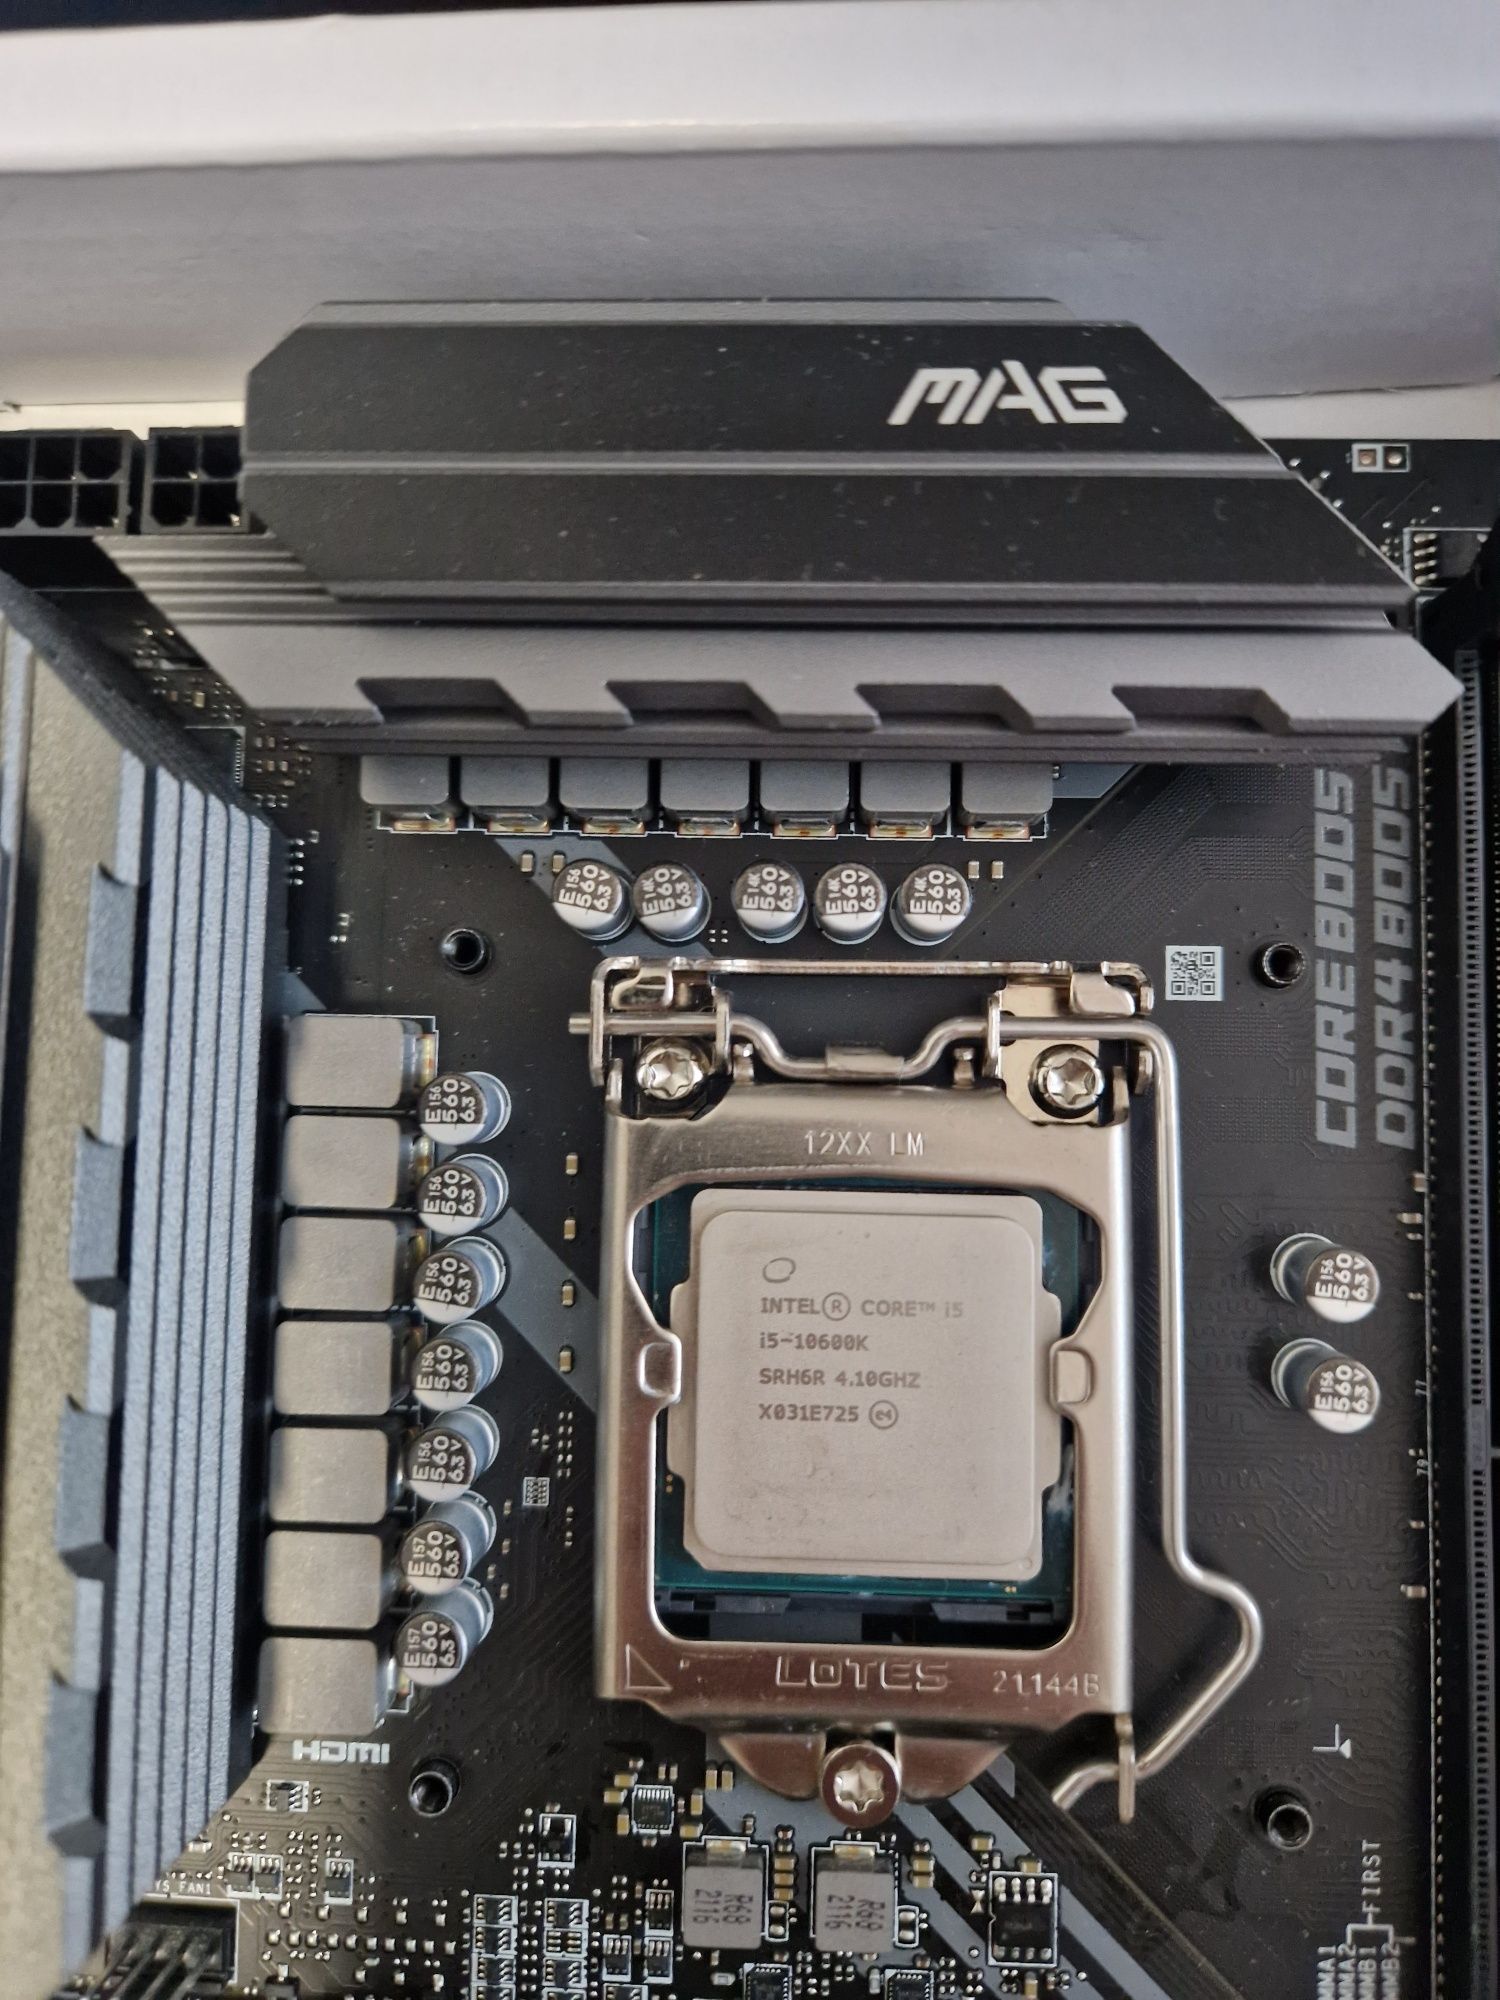 Procesor Intel core i5 10600k płyta główna msi Z490 tomahawk